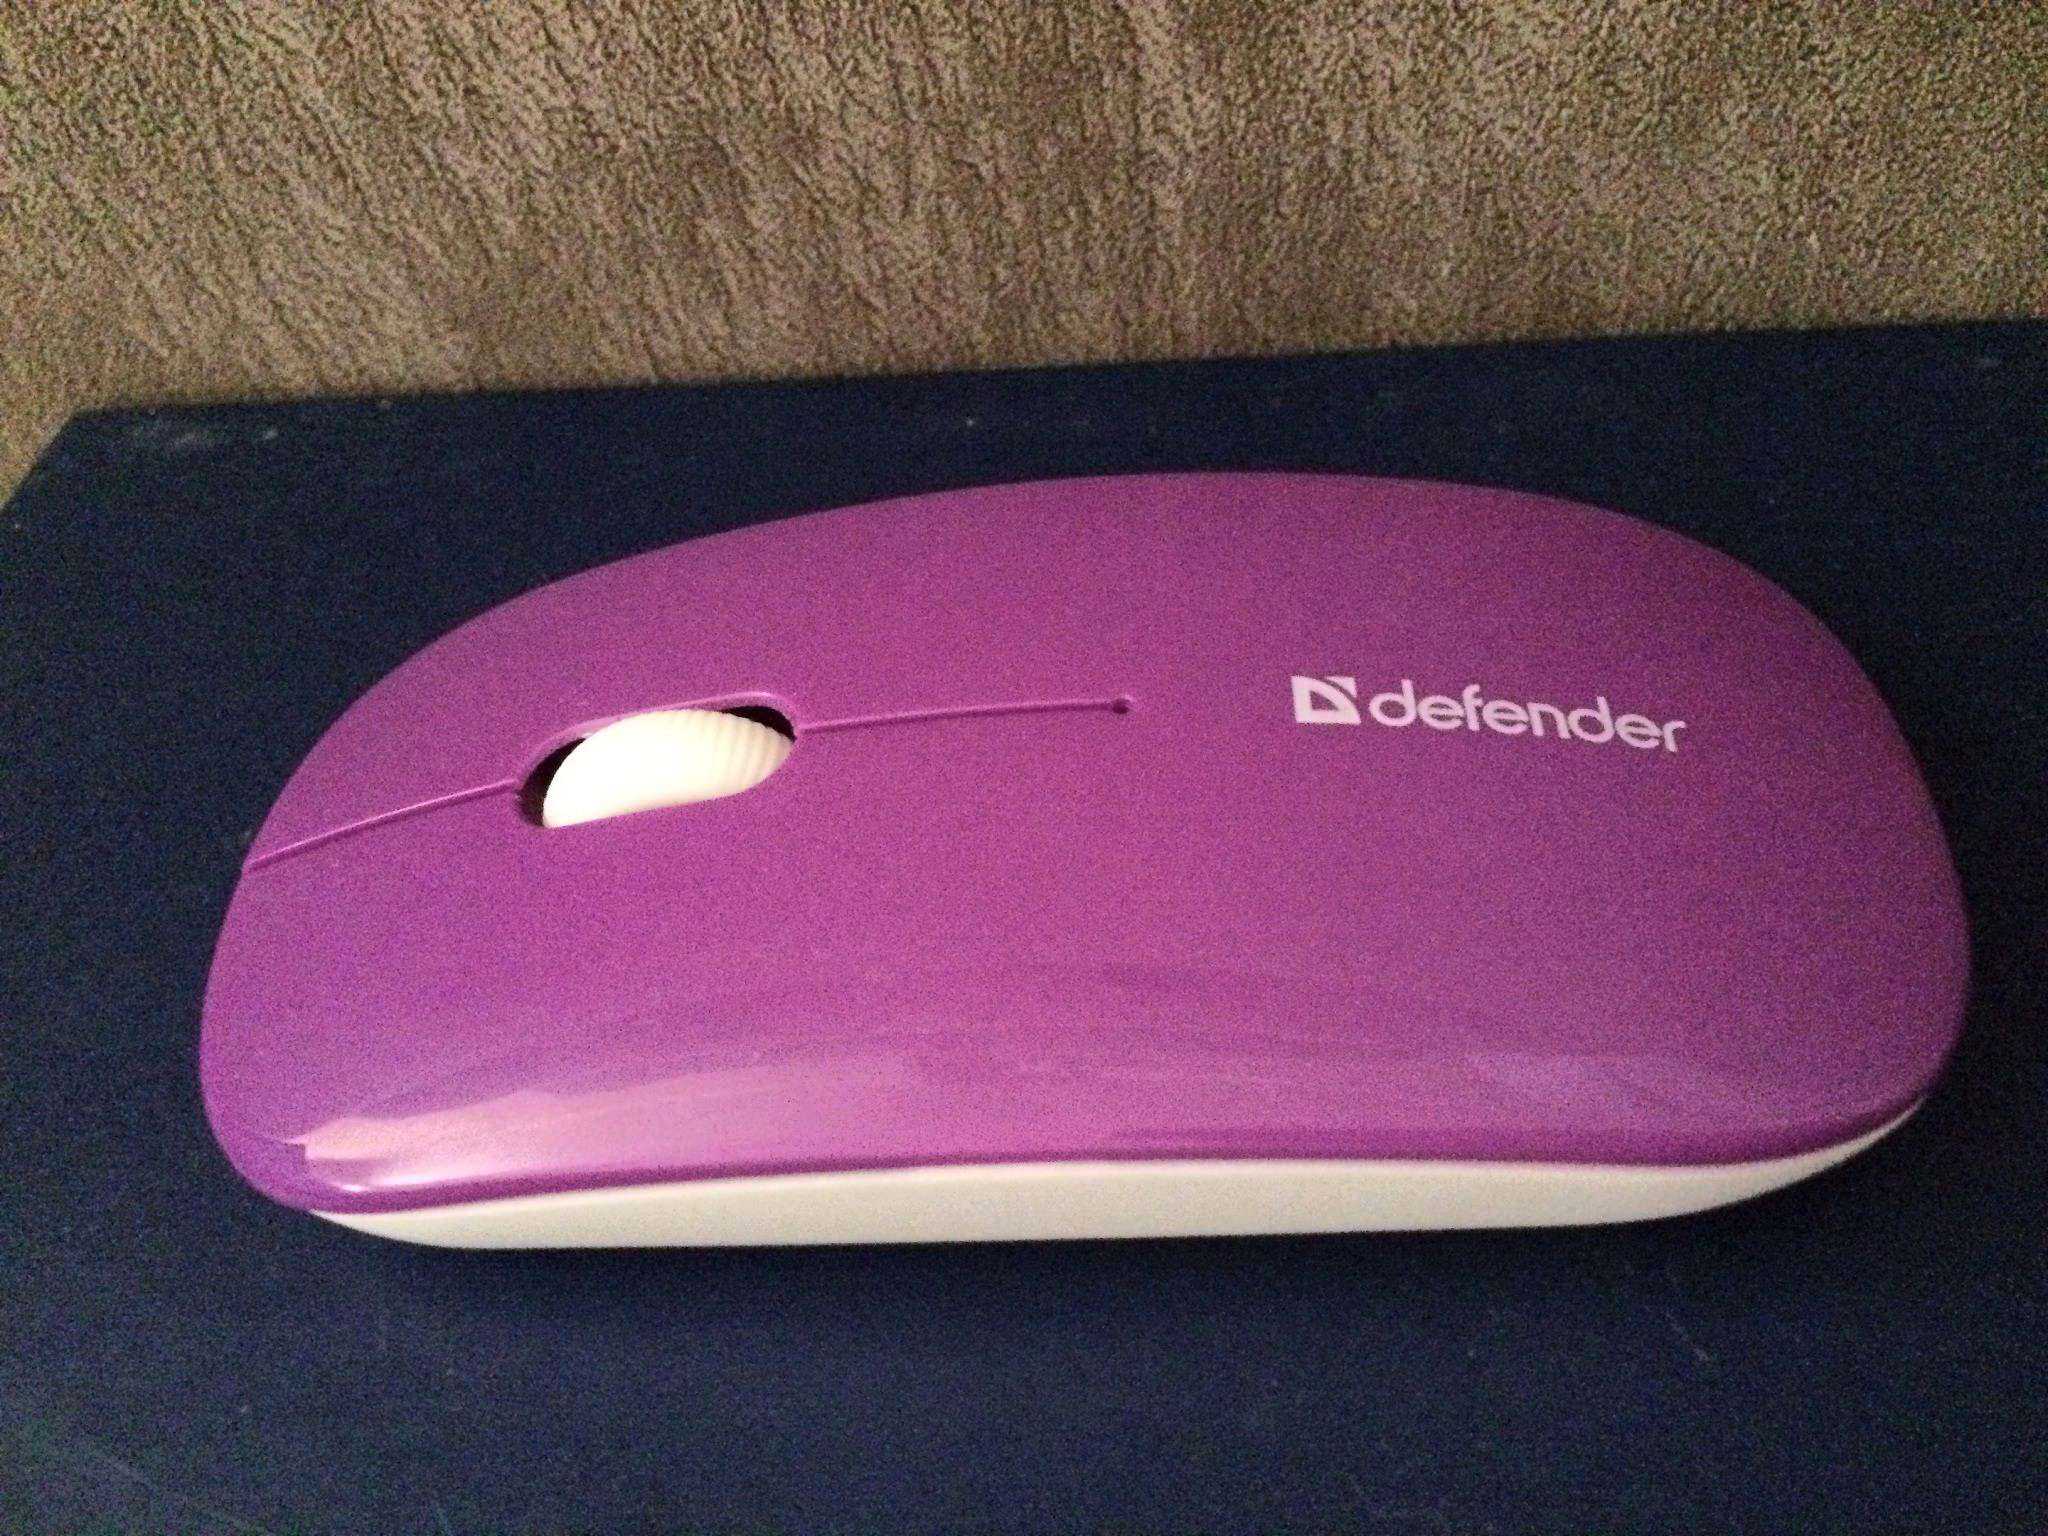 Defender netsprinter 440 bv black-violet usb отзывы покупателей и специалистов на отзовик